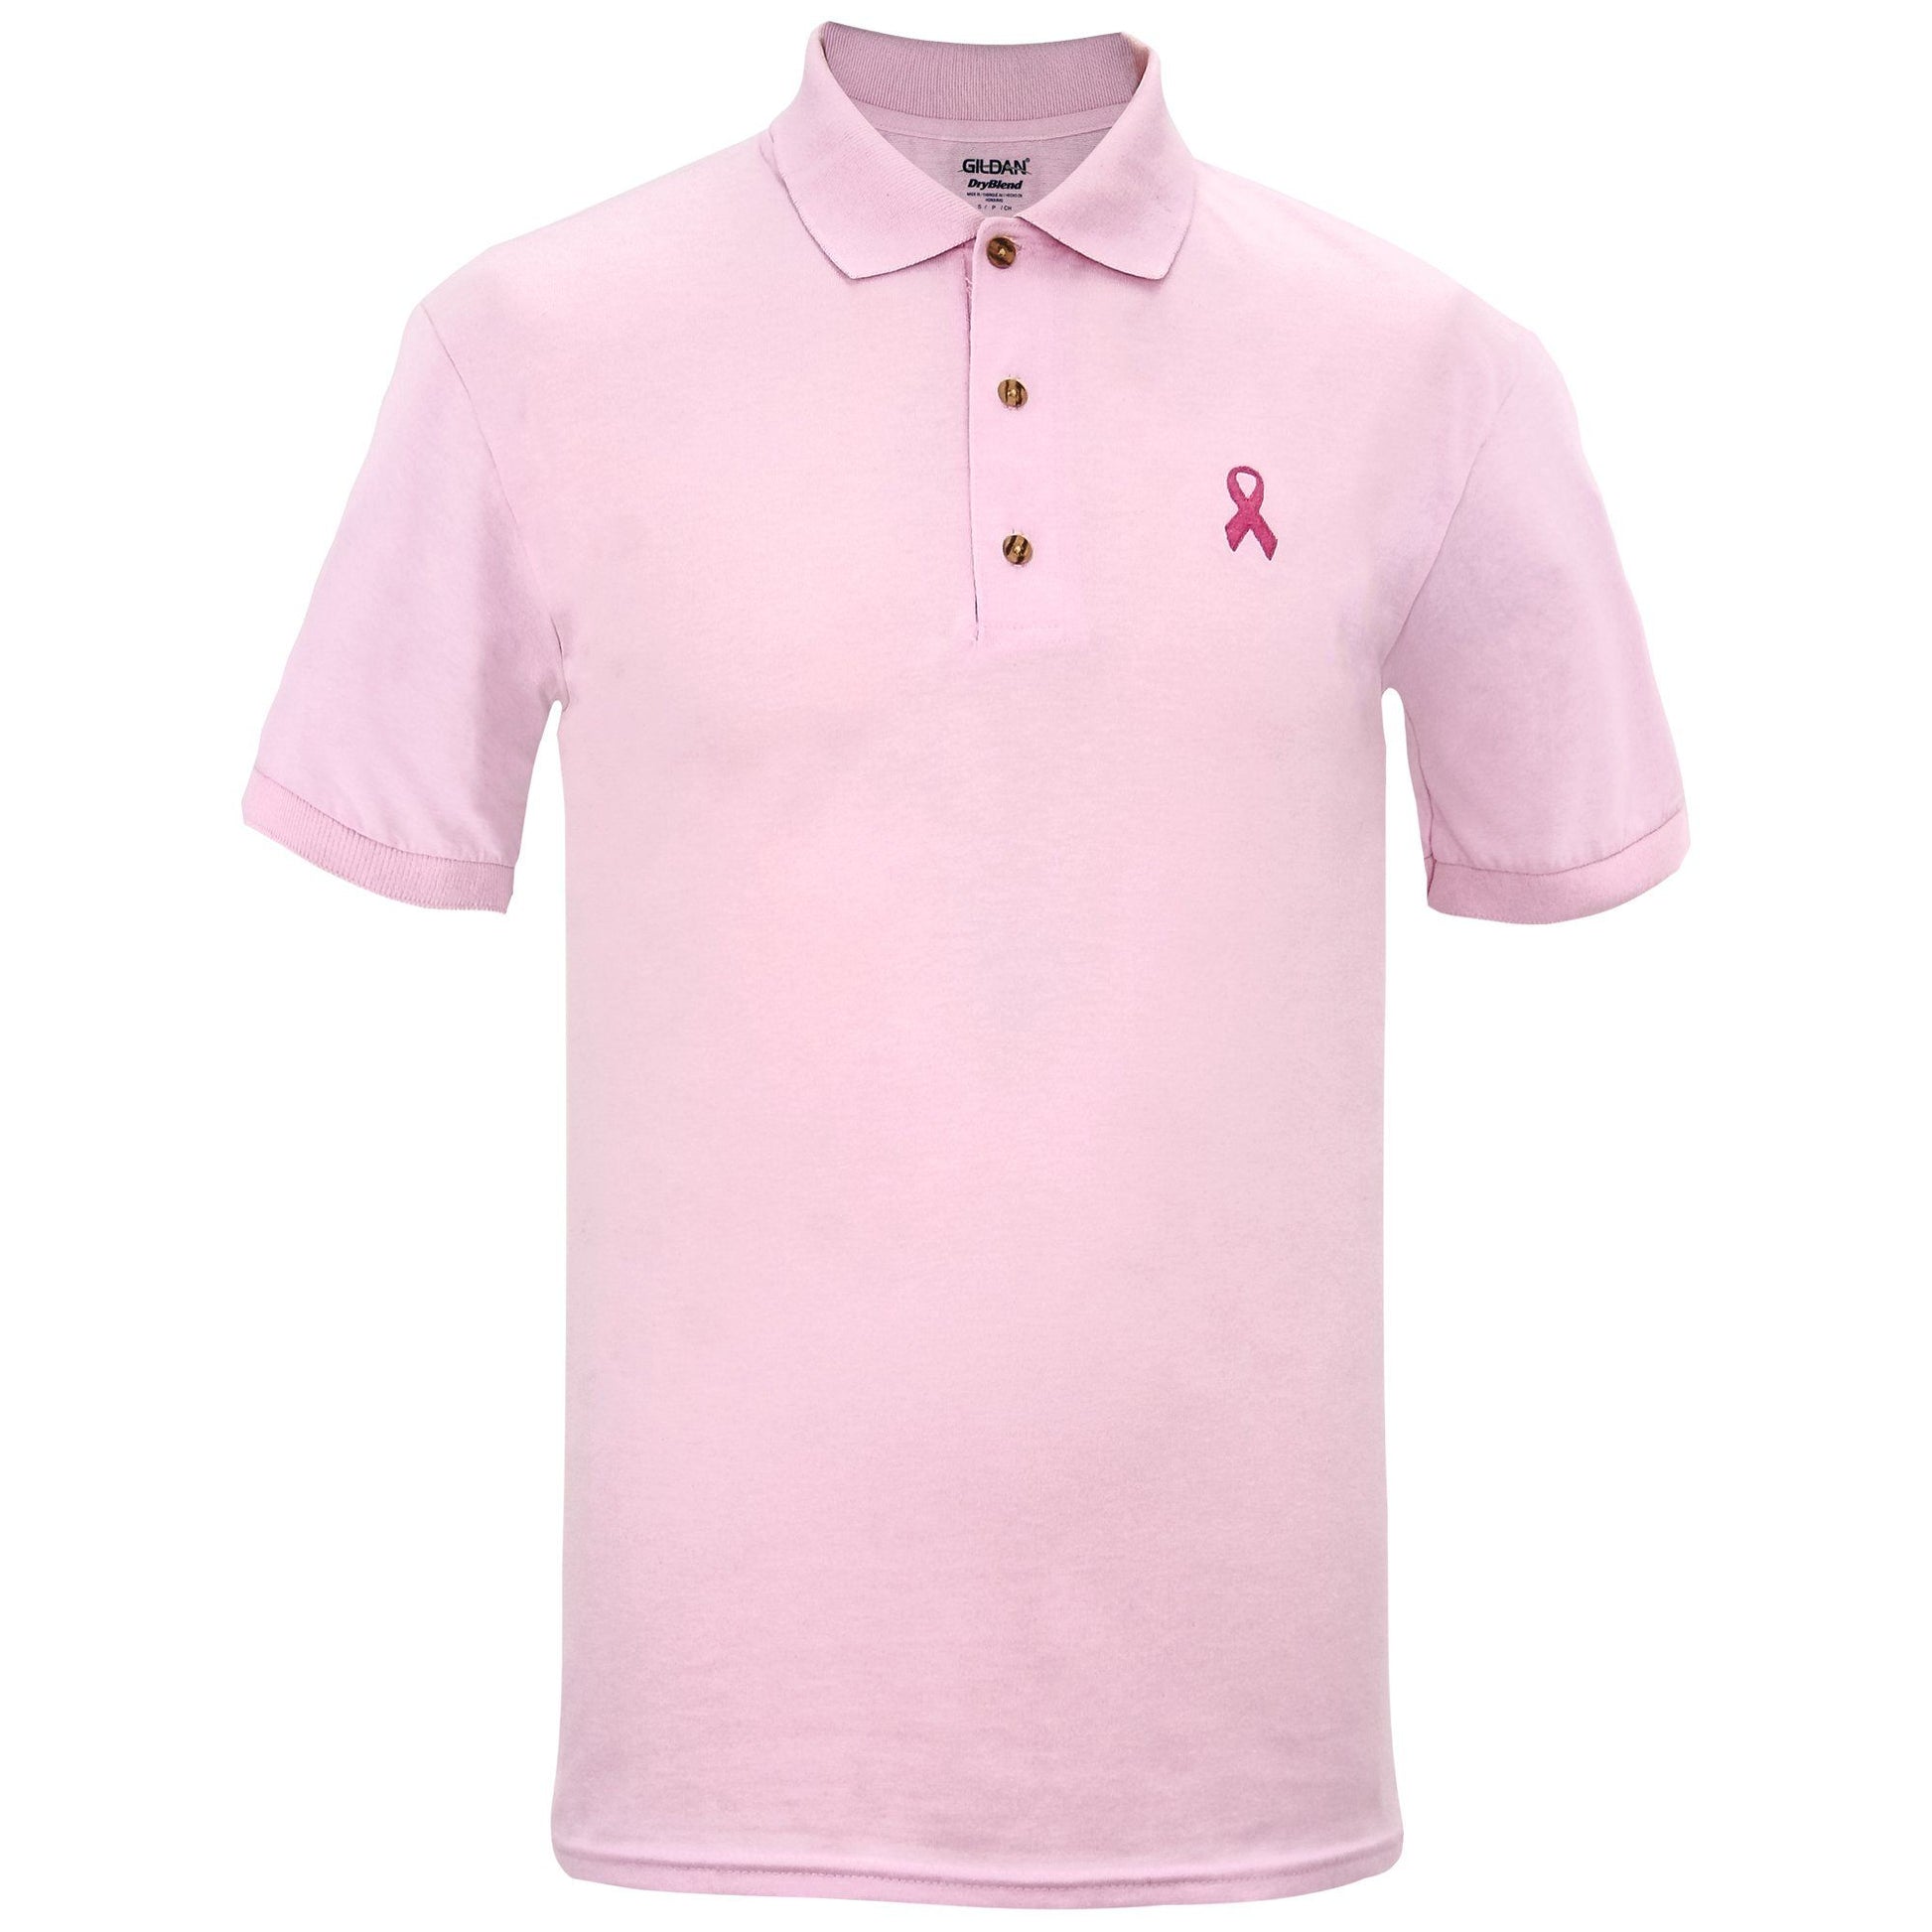 Men's Pink Ribbon Polo Shirt